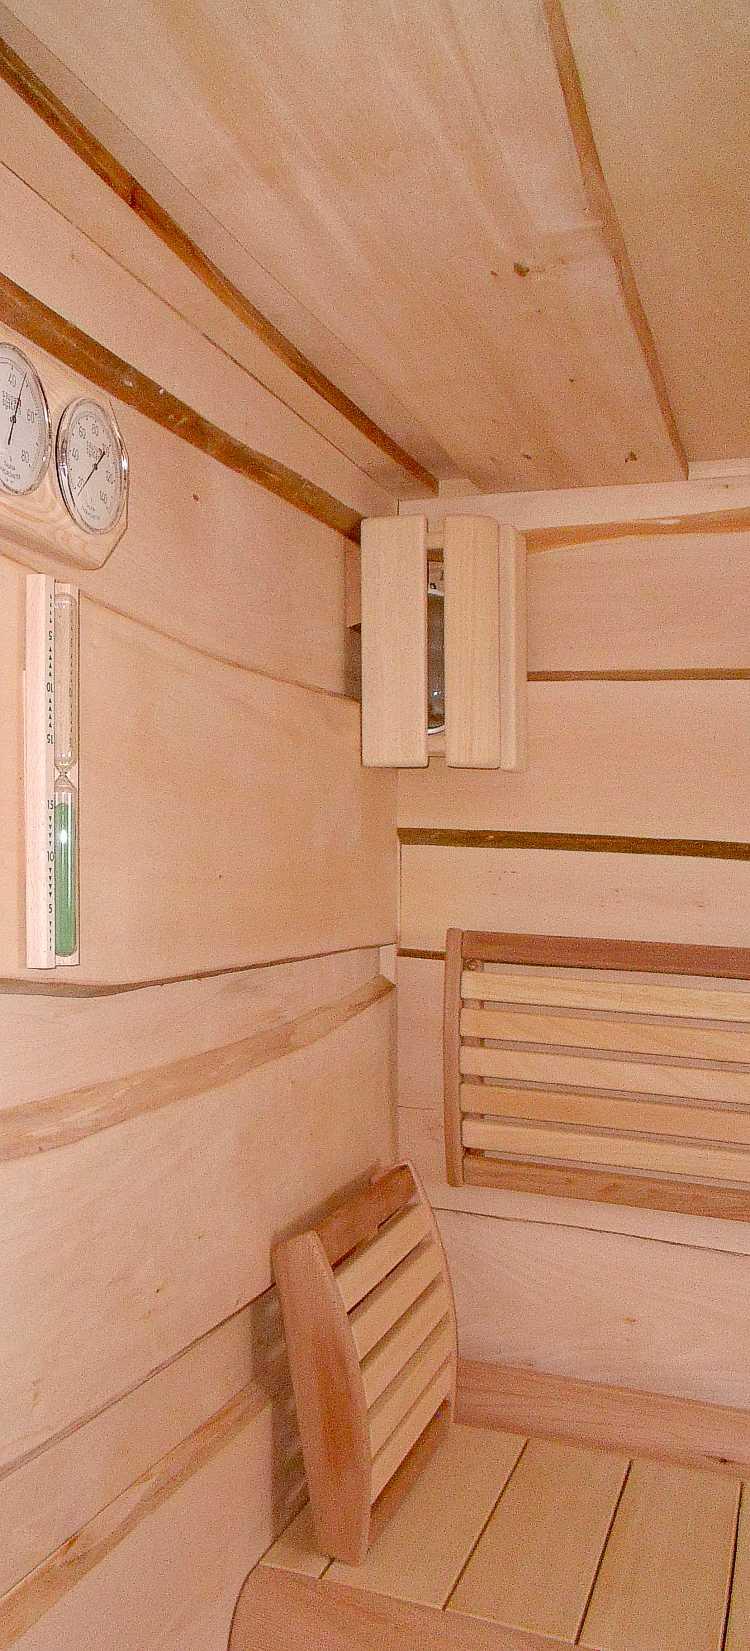 SAUNY AVALON Prvotřídní sauny AVALON vyrábíme a dodáváme na míru dle přání zákazníka v rozměrech od 2000 x 2000 mm s